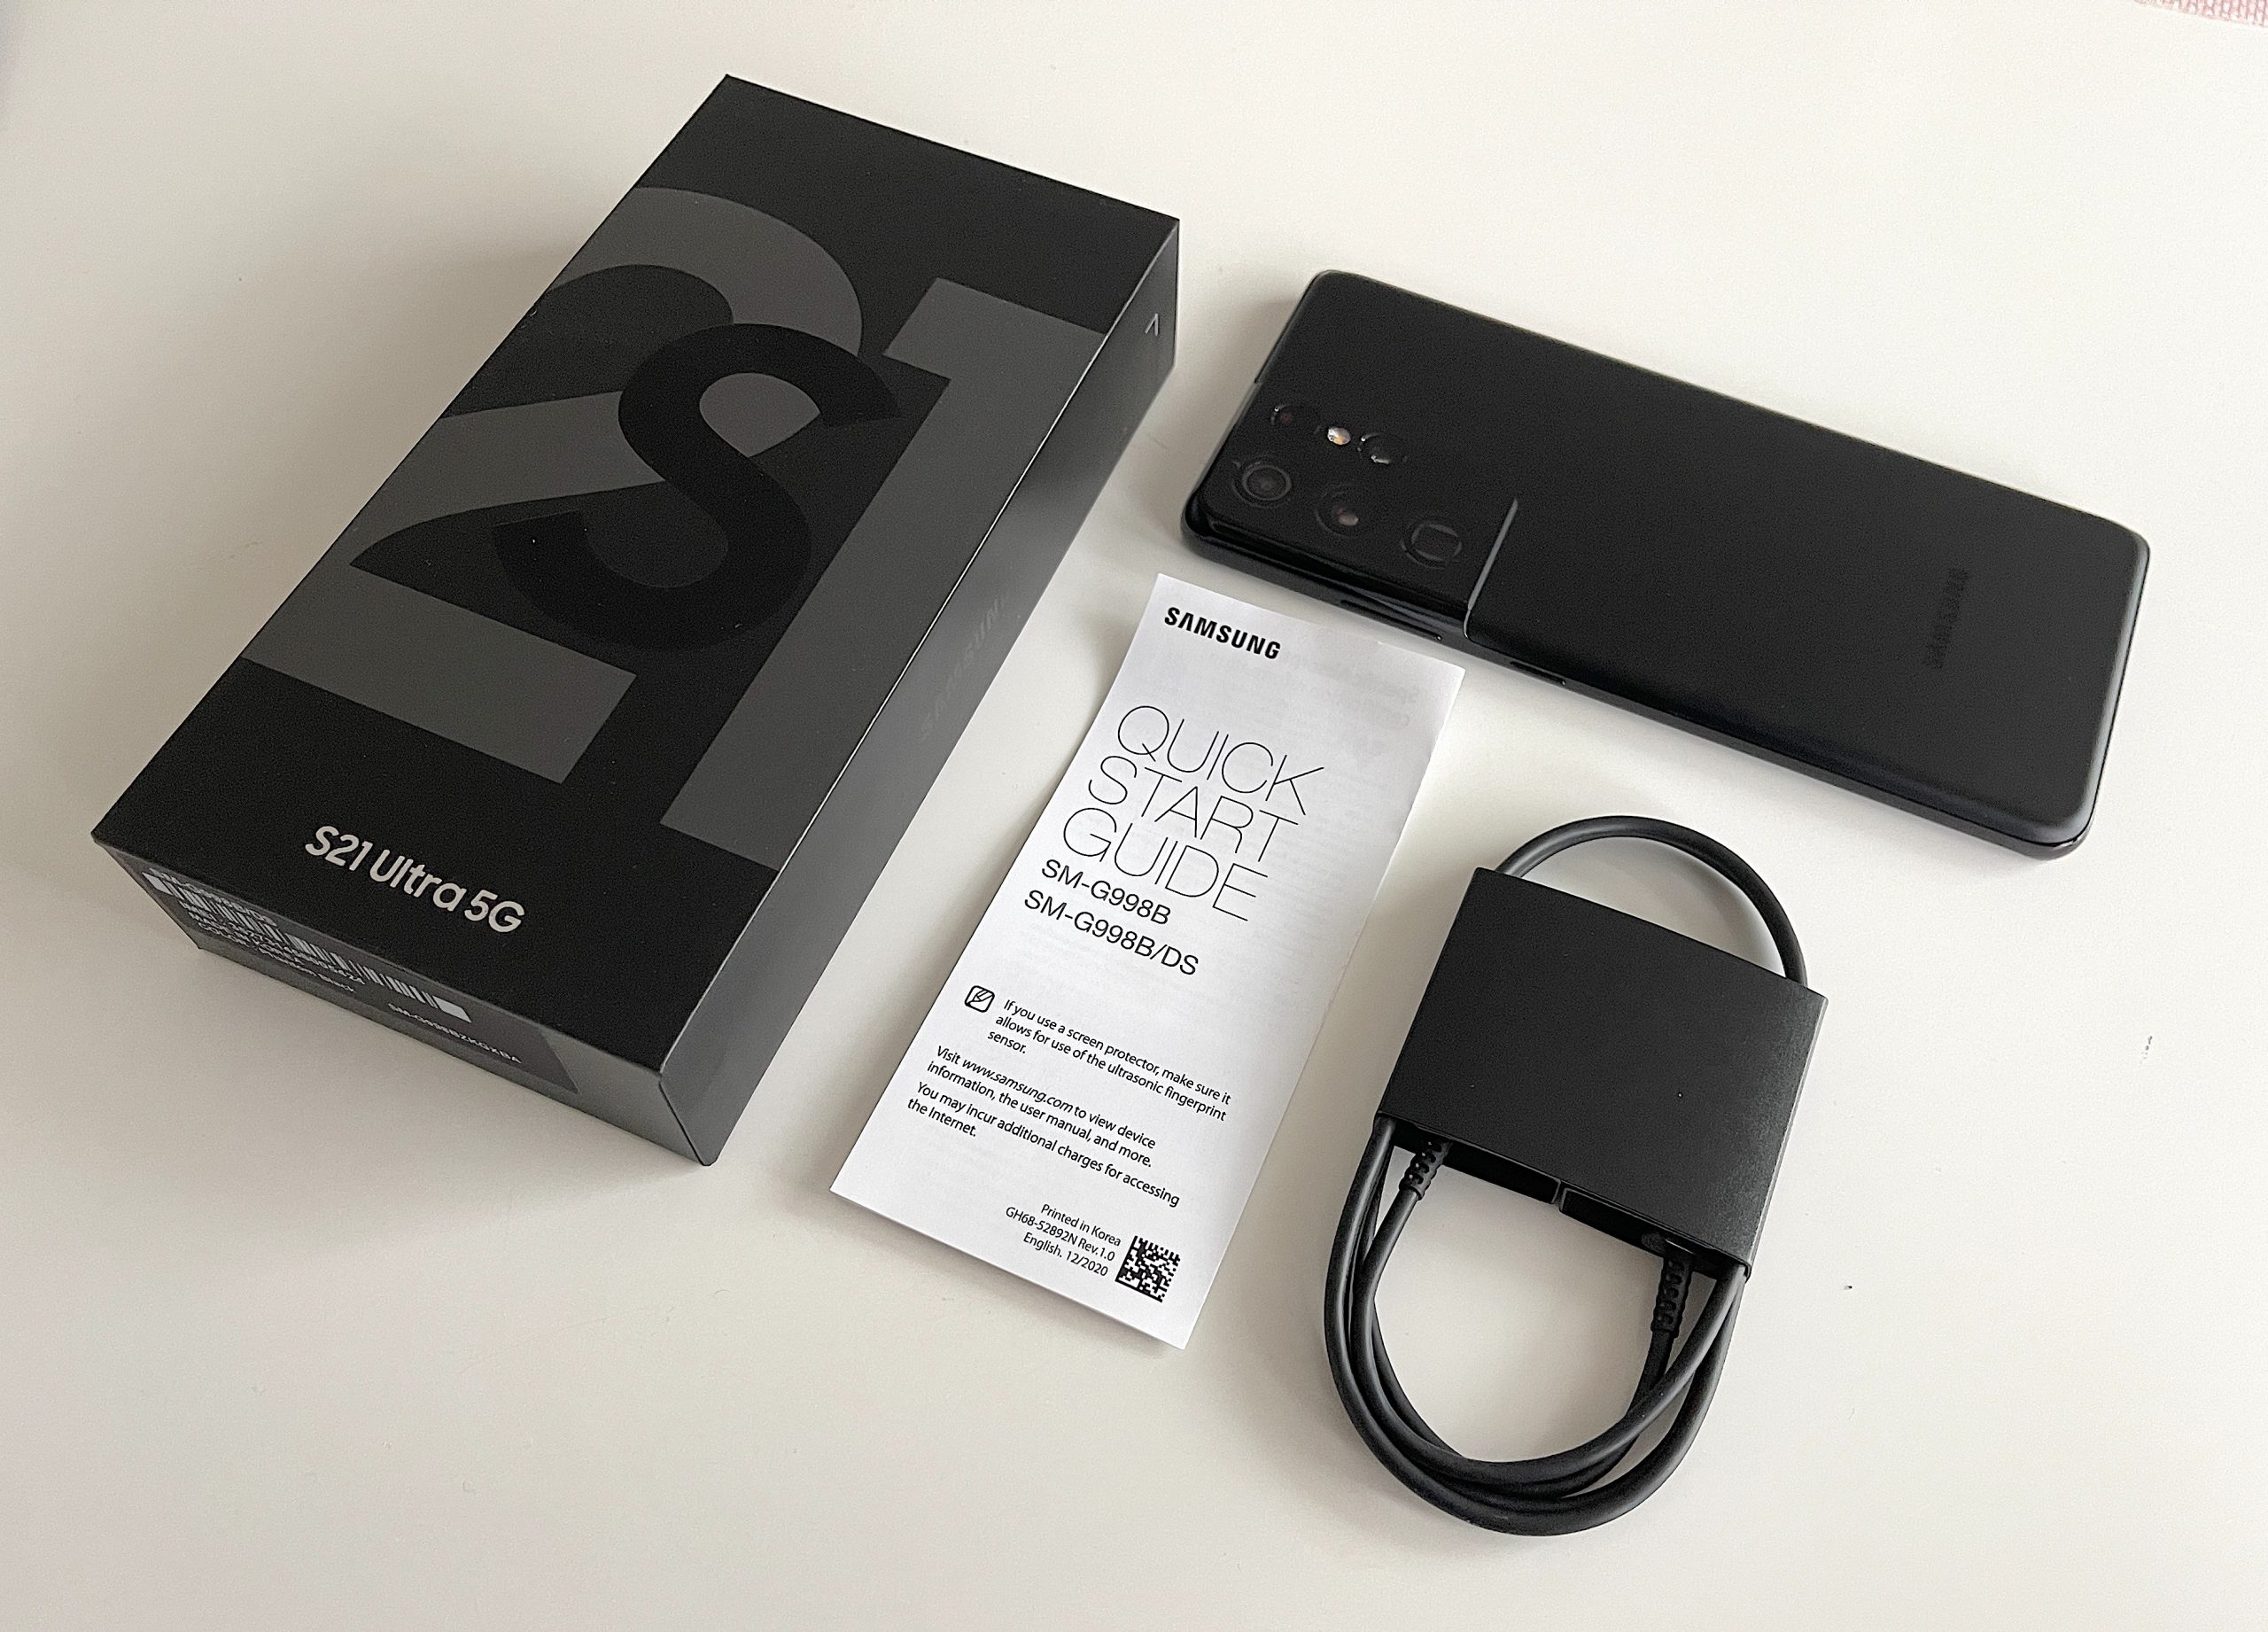 Samsung ei toimita Galaxy S21 -puhelinten myyntipakkauksessa enää laturia tai kuulokkeita. Myös Galaxy S21 Ultra 5G:n mukana tulee vain USB-C-kaapeli.